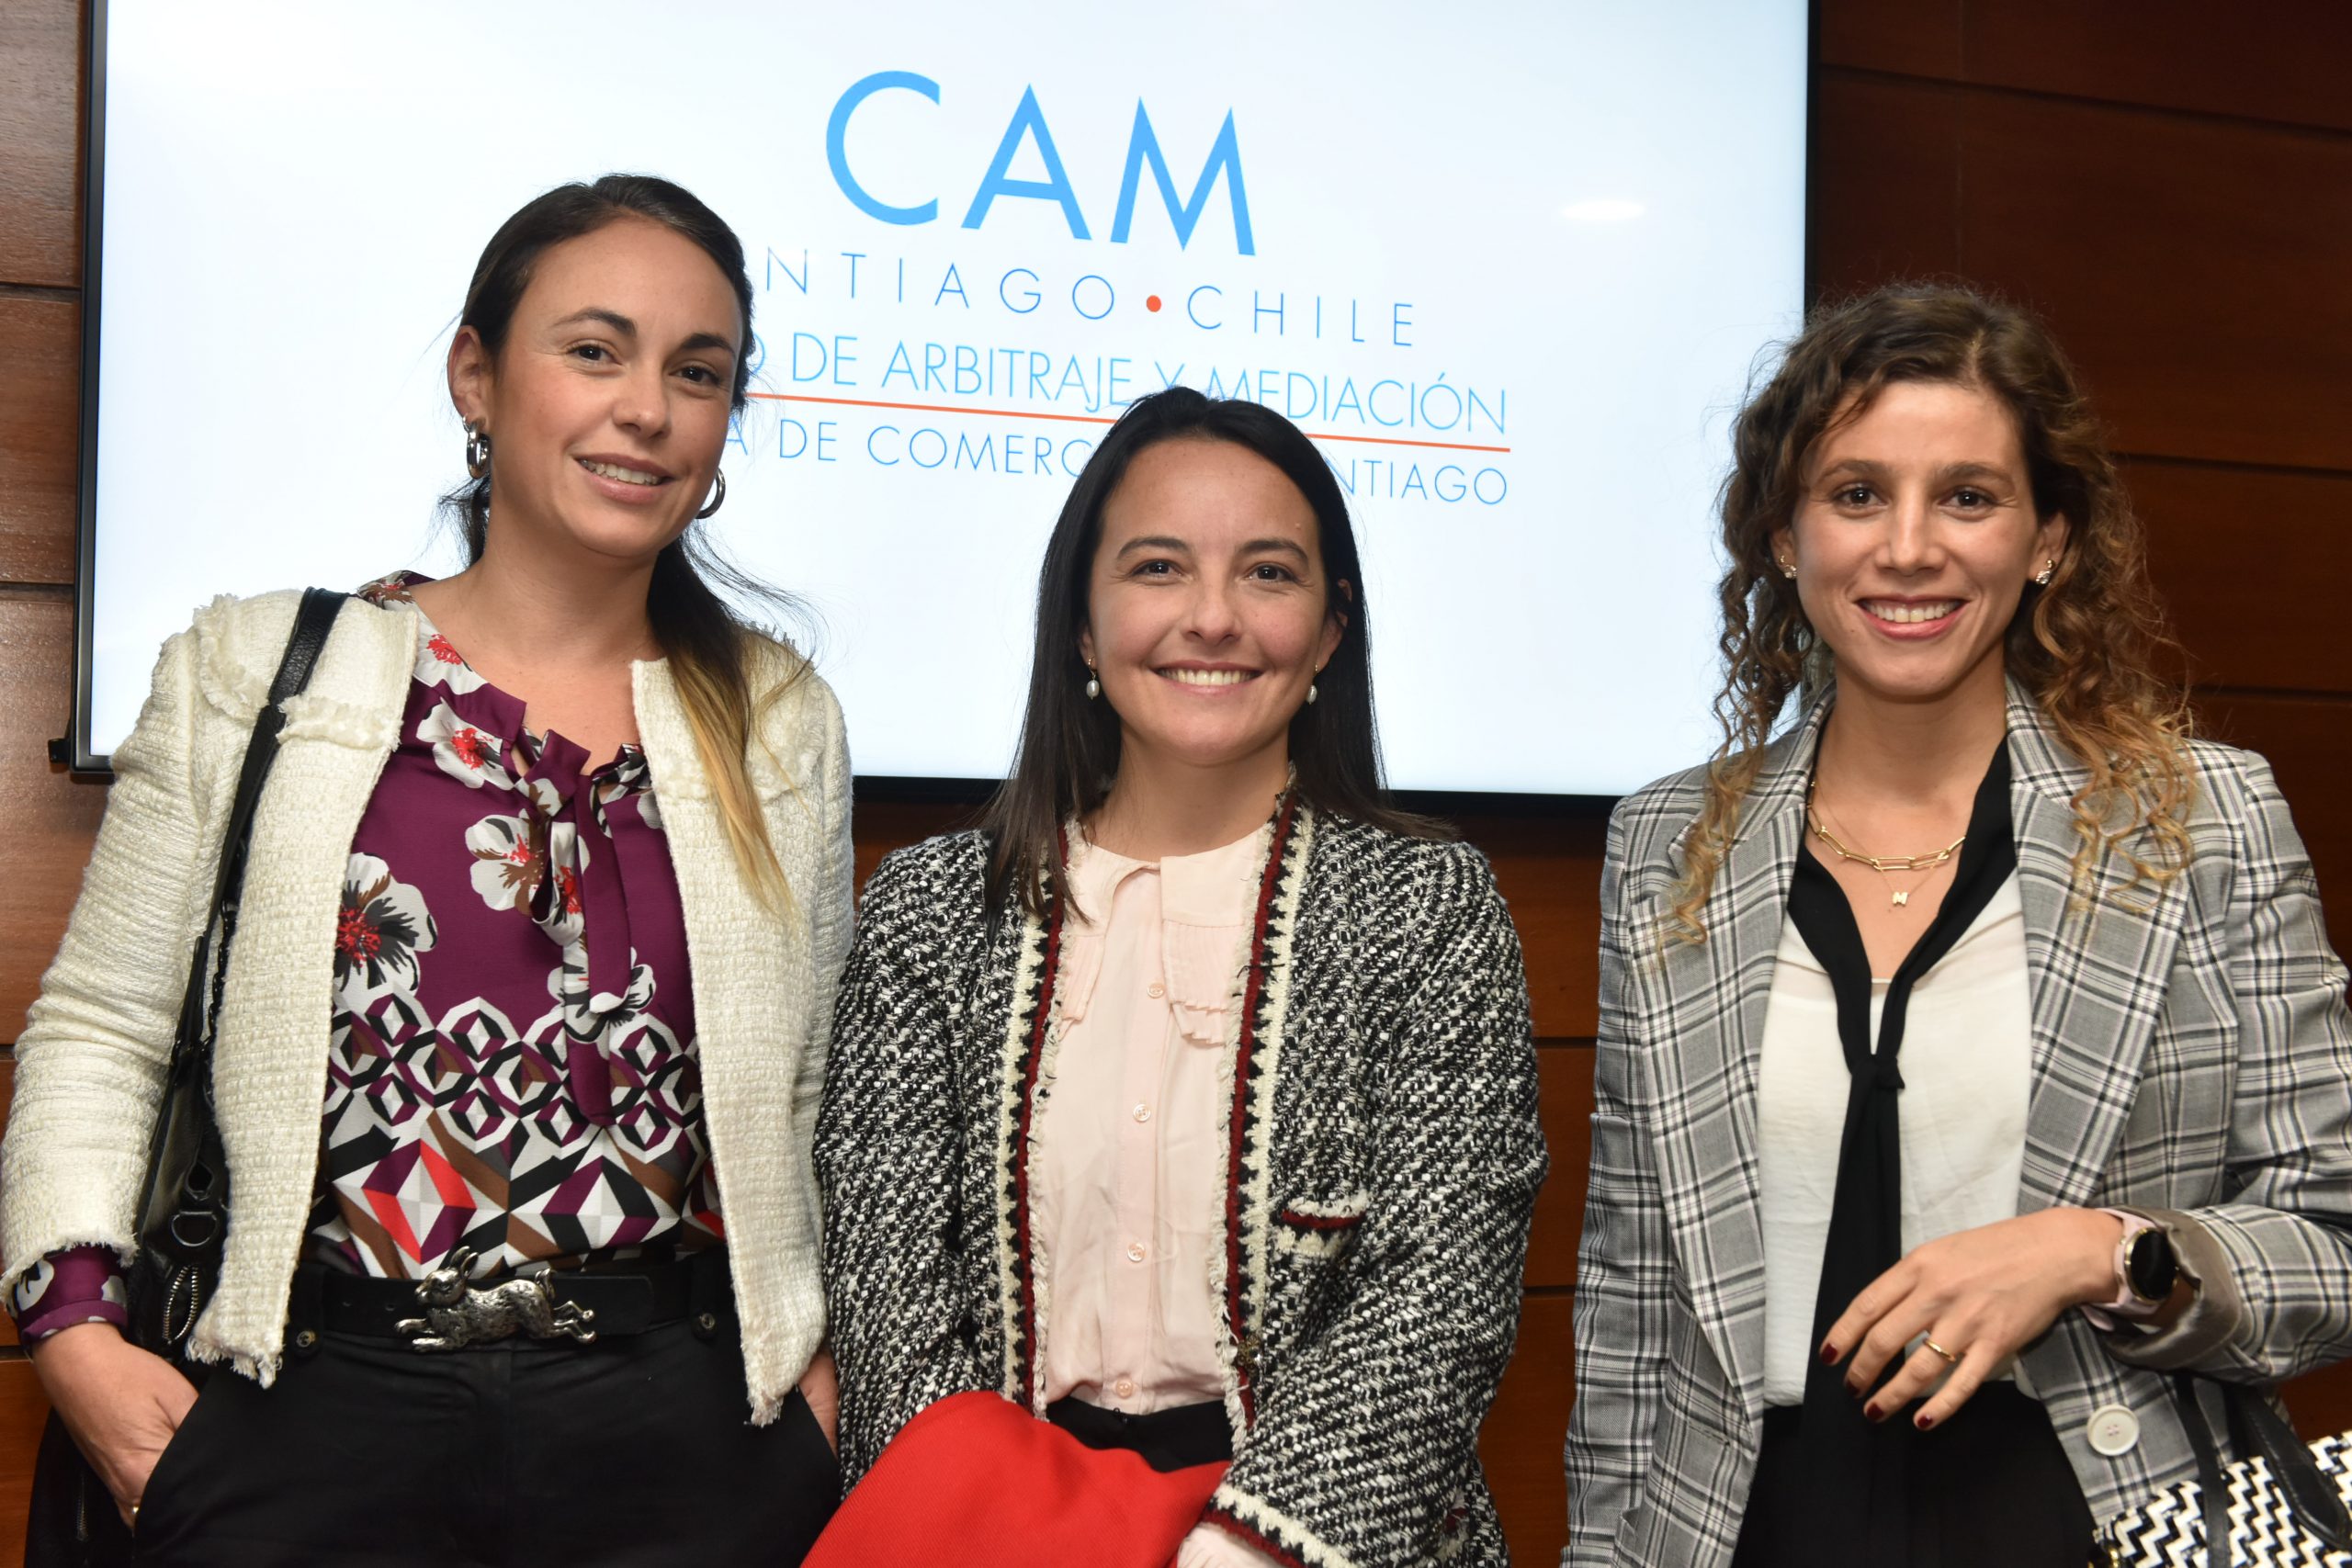 Nuevo nombramiento de mediadores y árbitros jóvenes en el CAM Santiago